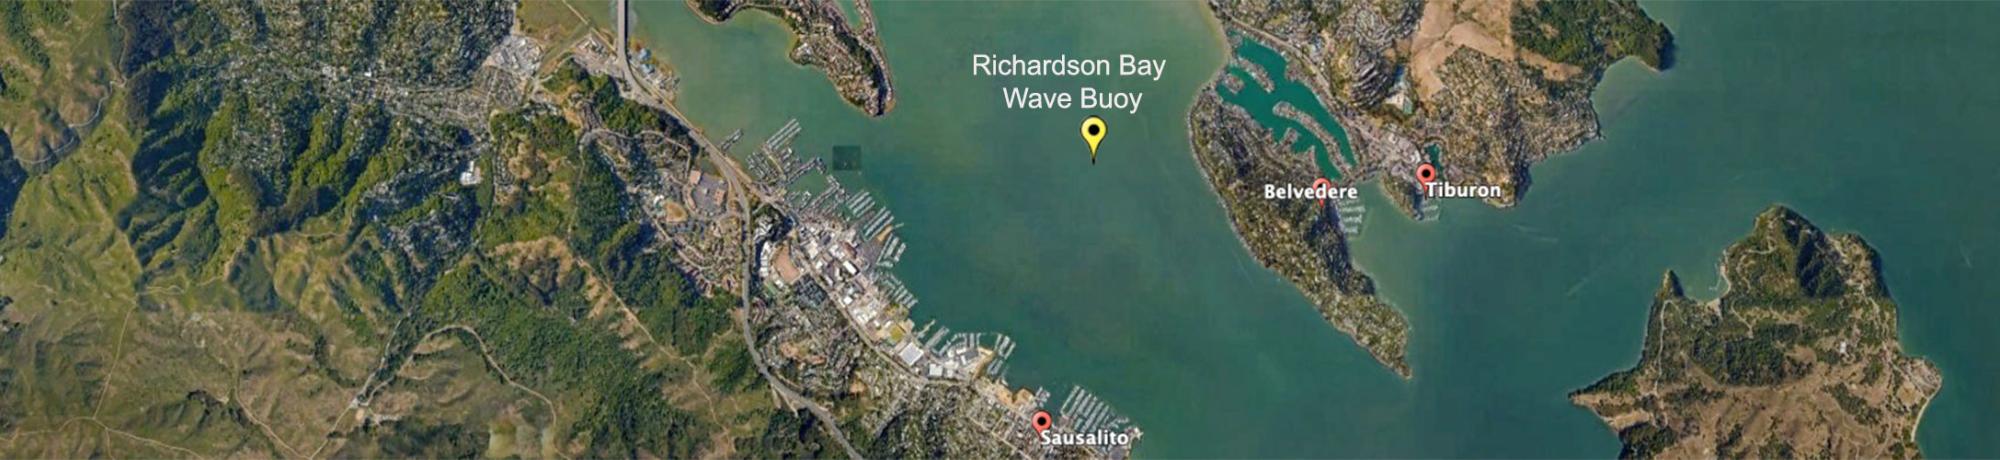 Richardson Bay Wave Buoy